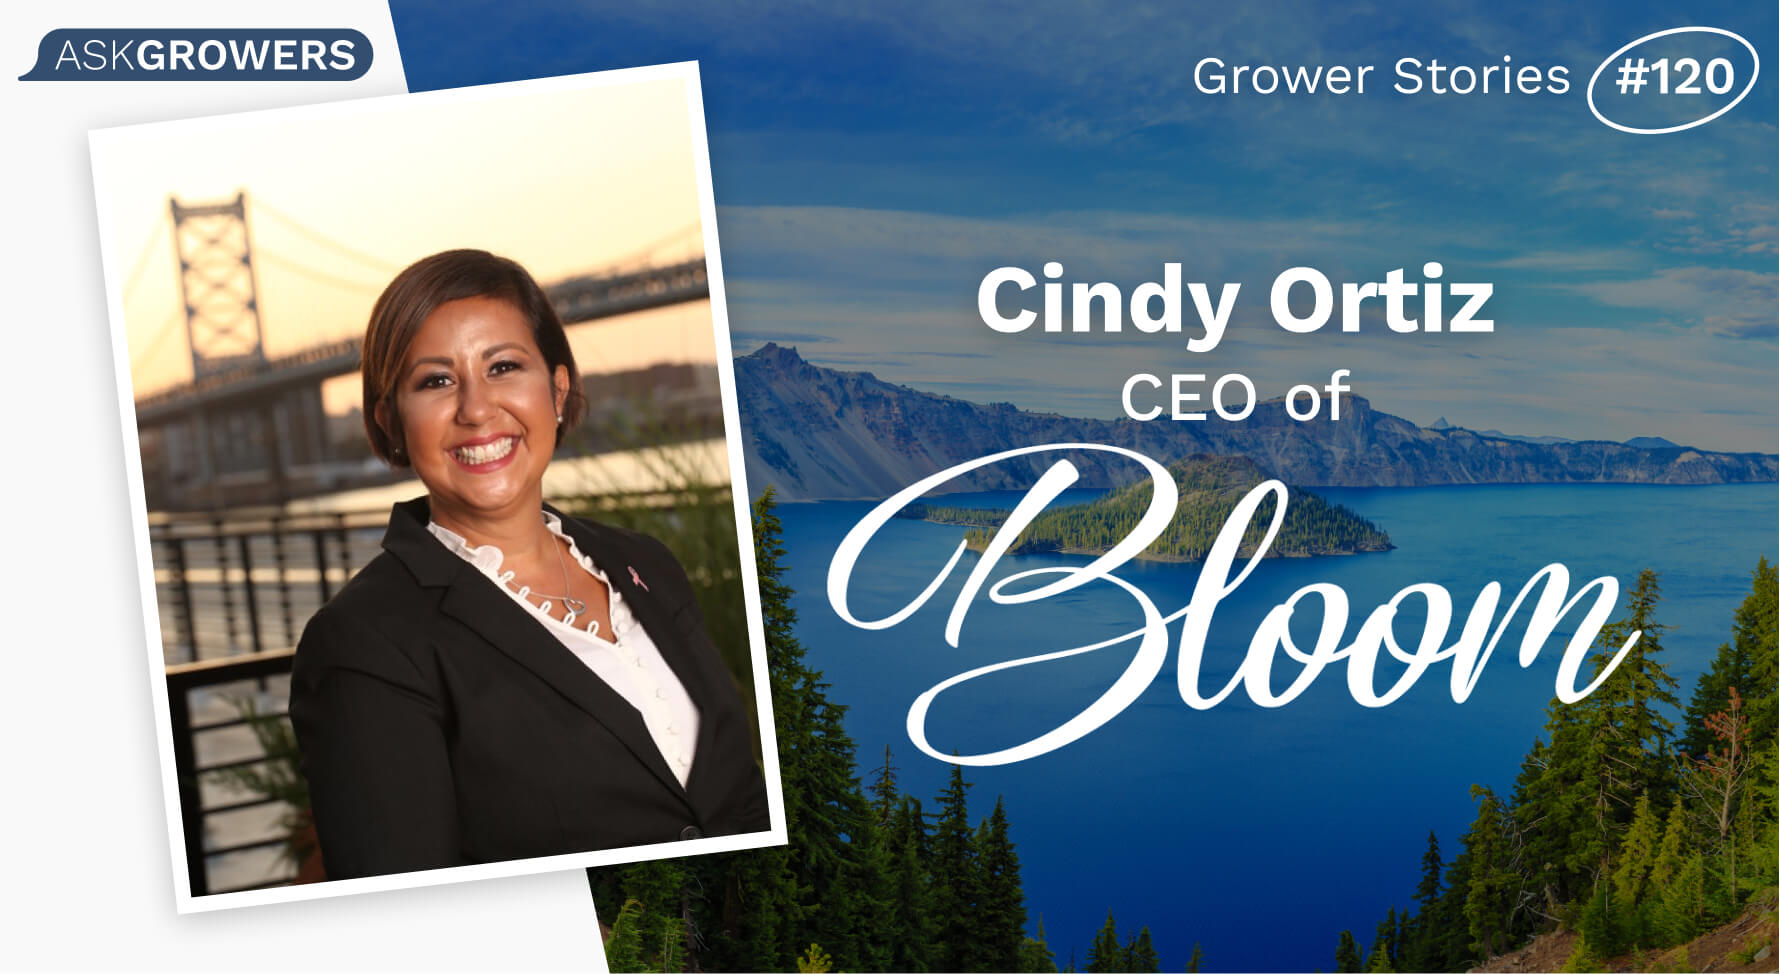 Grower Stories #120: Cindy Ortiz